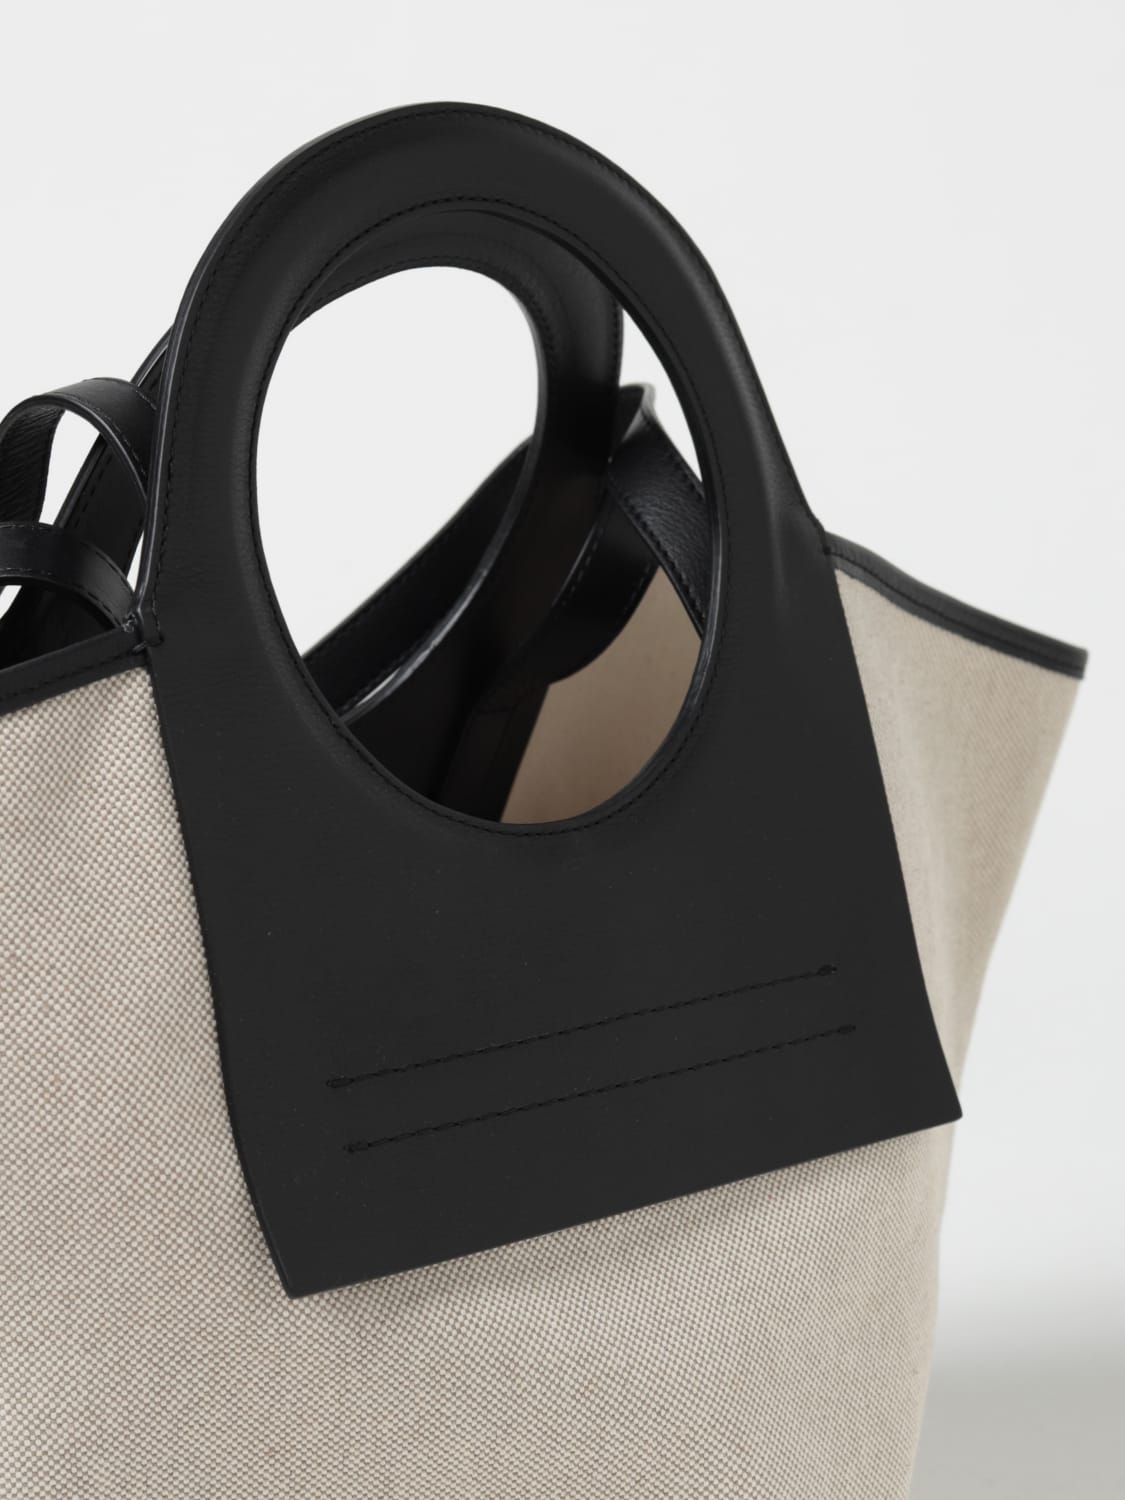 HEREU: tote bags for woman - Black  Hereu tote bags WBCALS online at